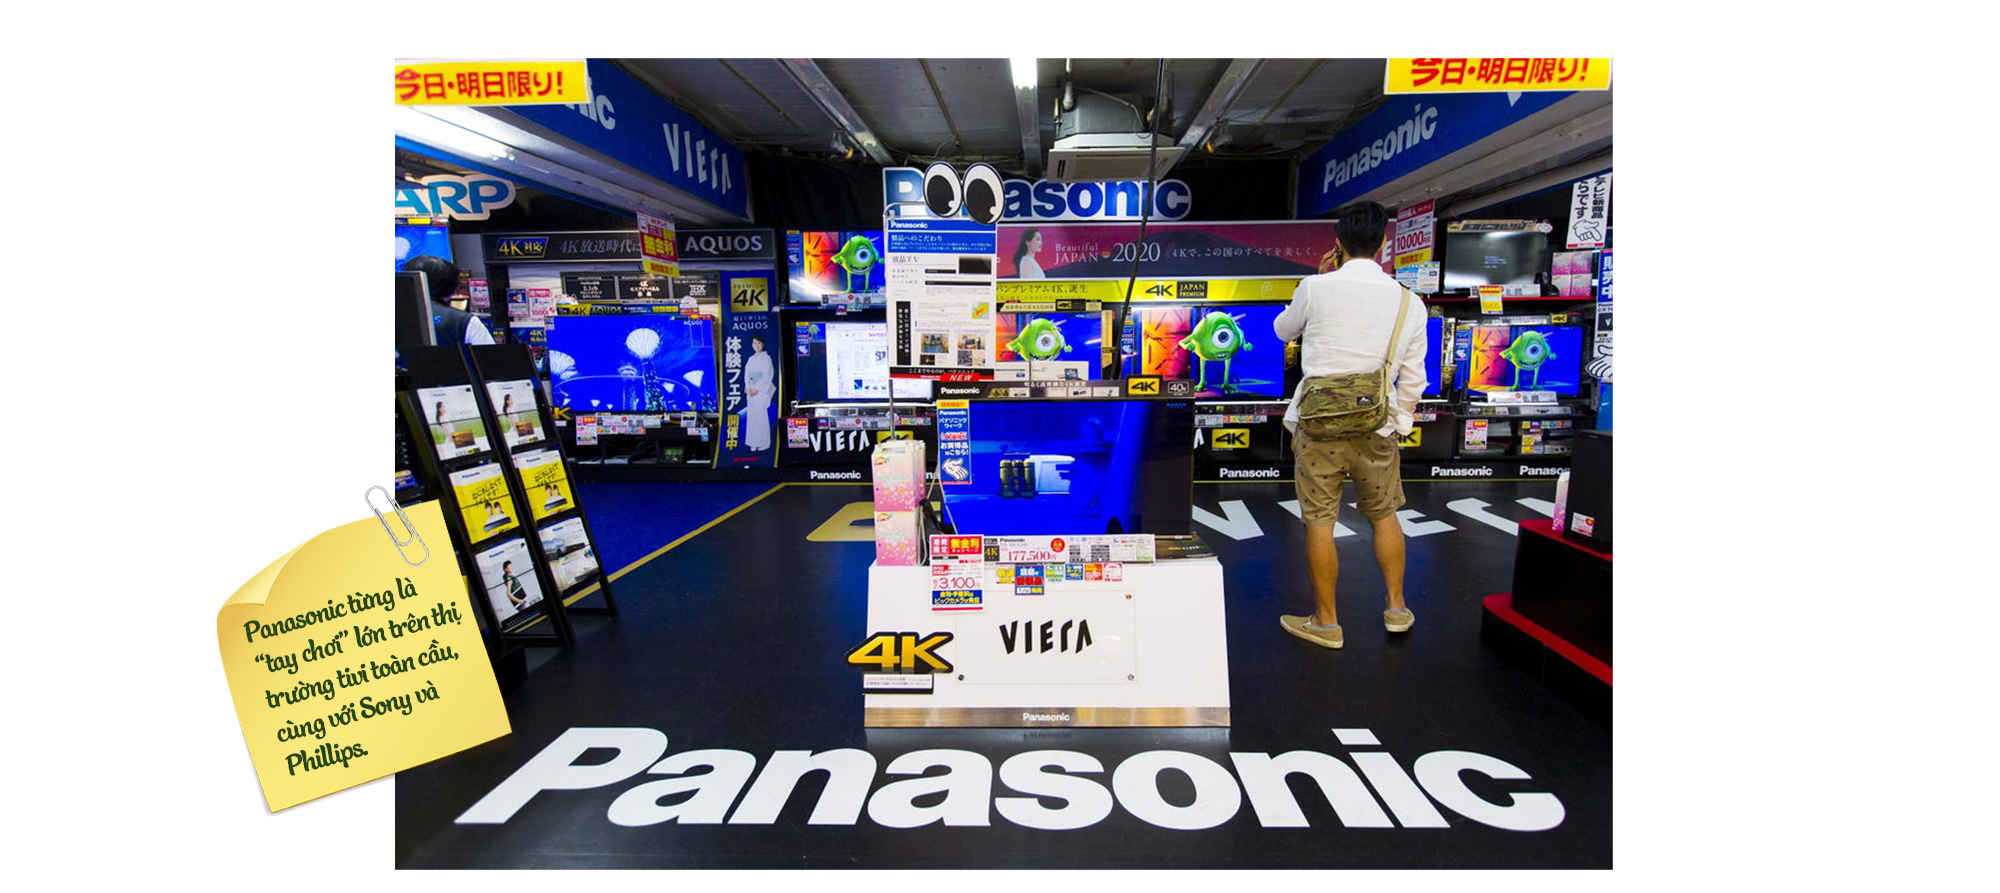 Kế hoạch hồi sinh Panasonic của CEO mới